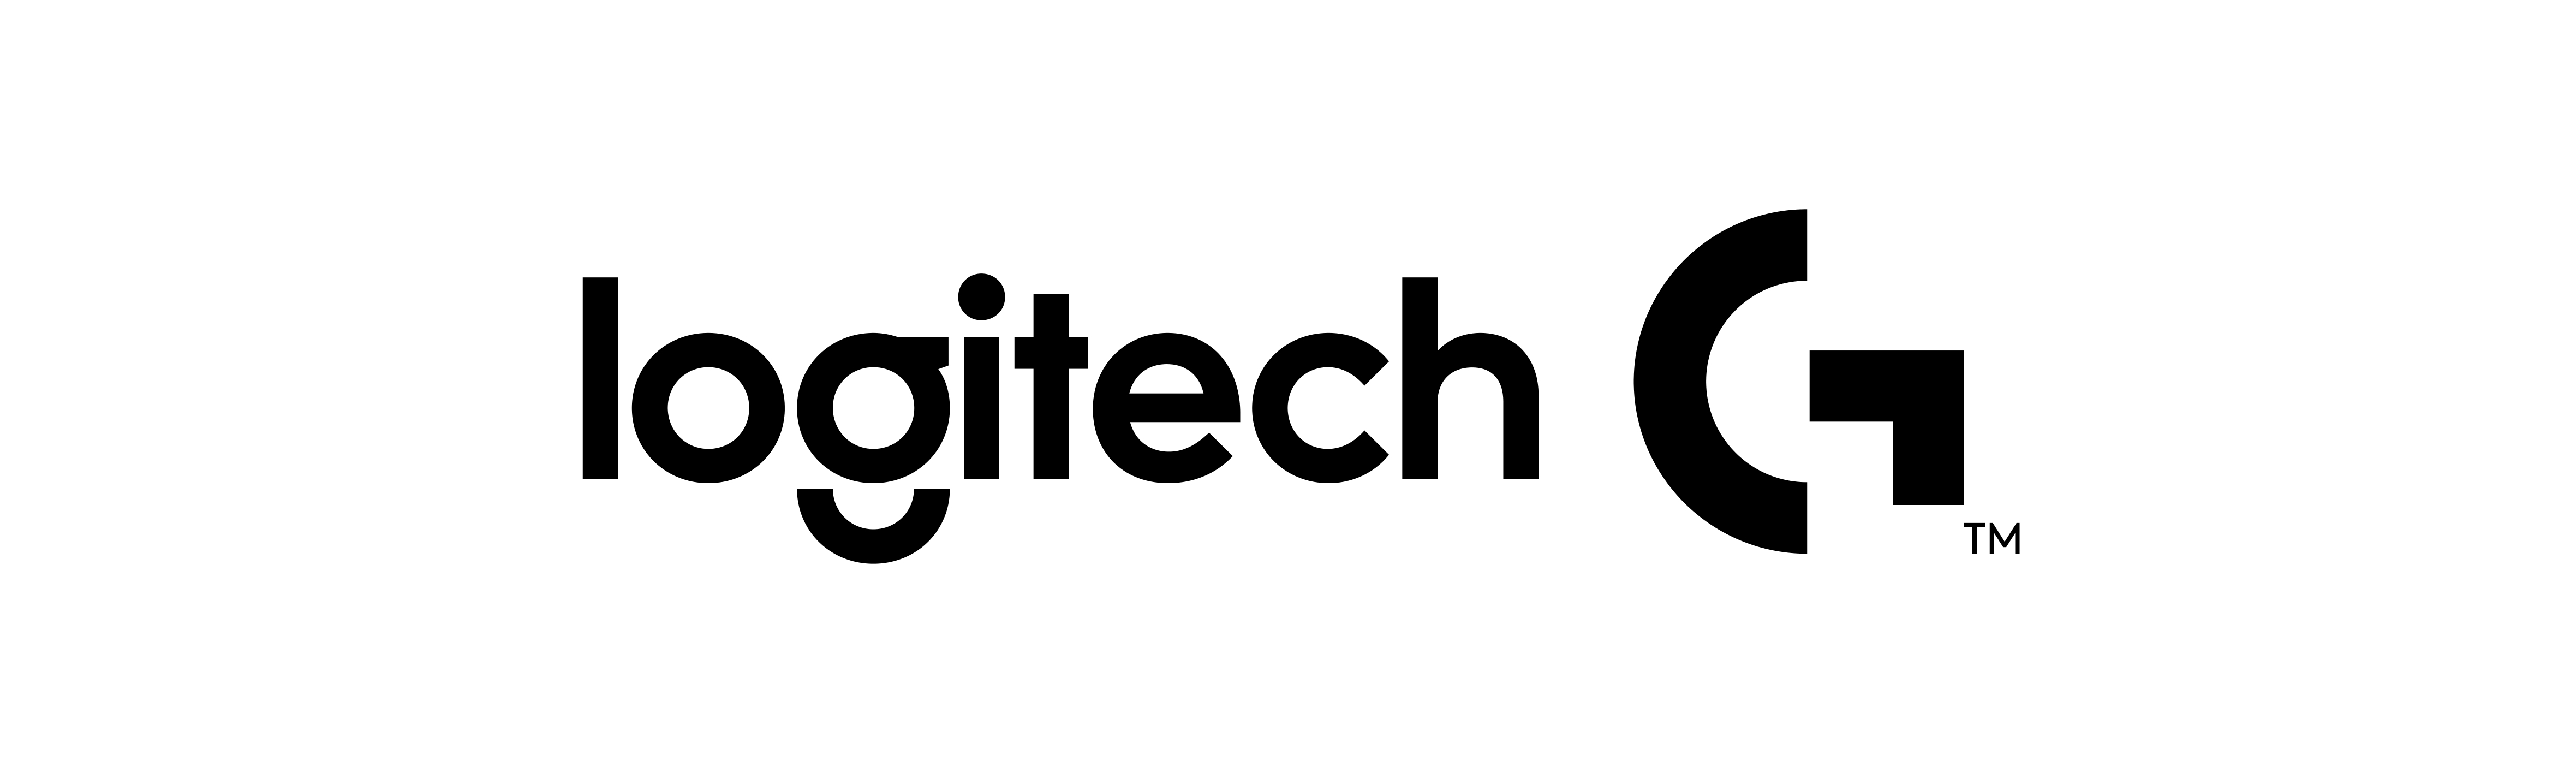 Logitech-G Logo